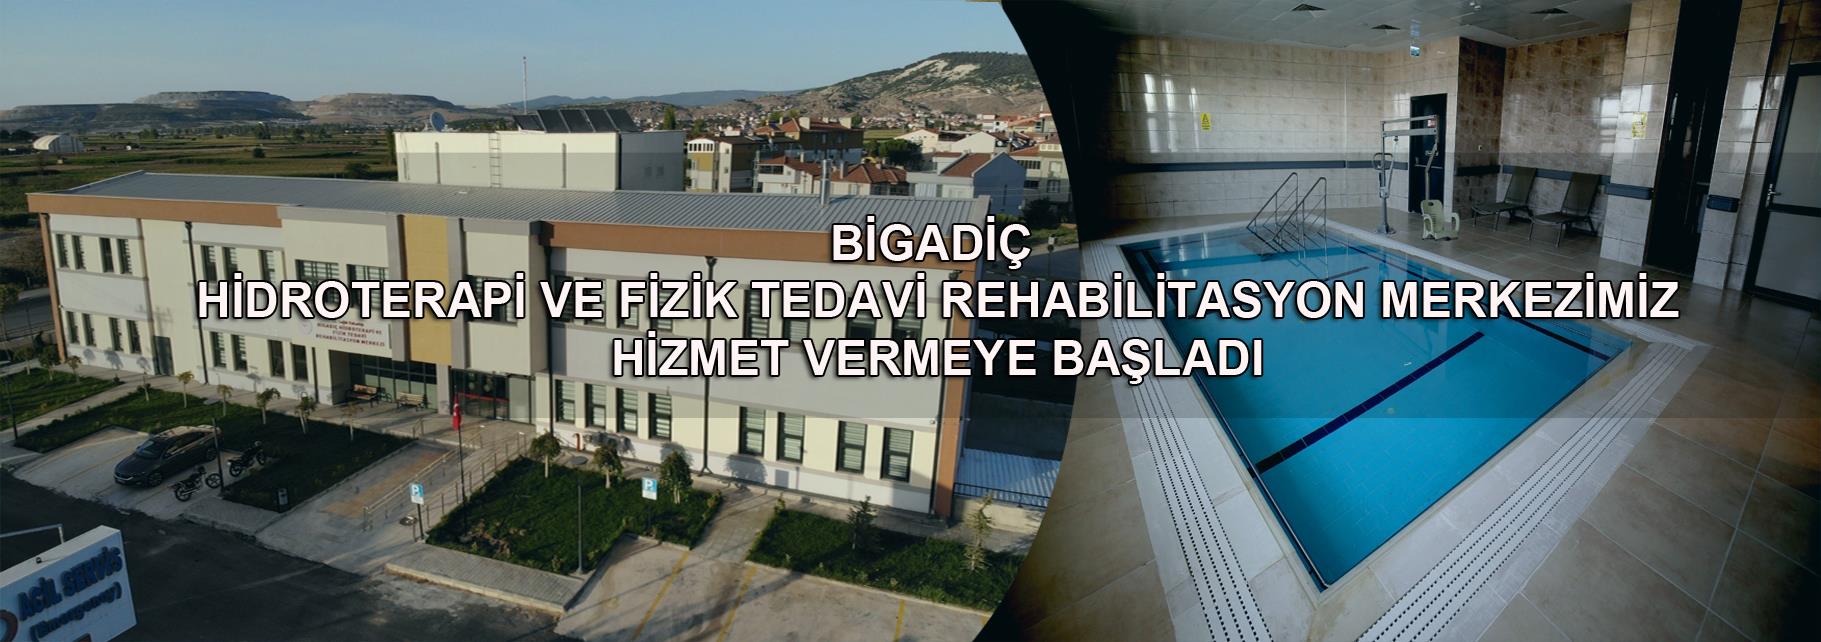 Bigadiç Hidroterapi ve Fizik Tedavi Rehabilitasyon Merkezimiz Açıldı.